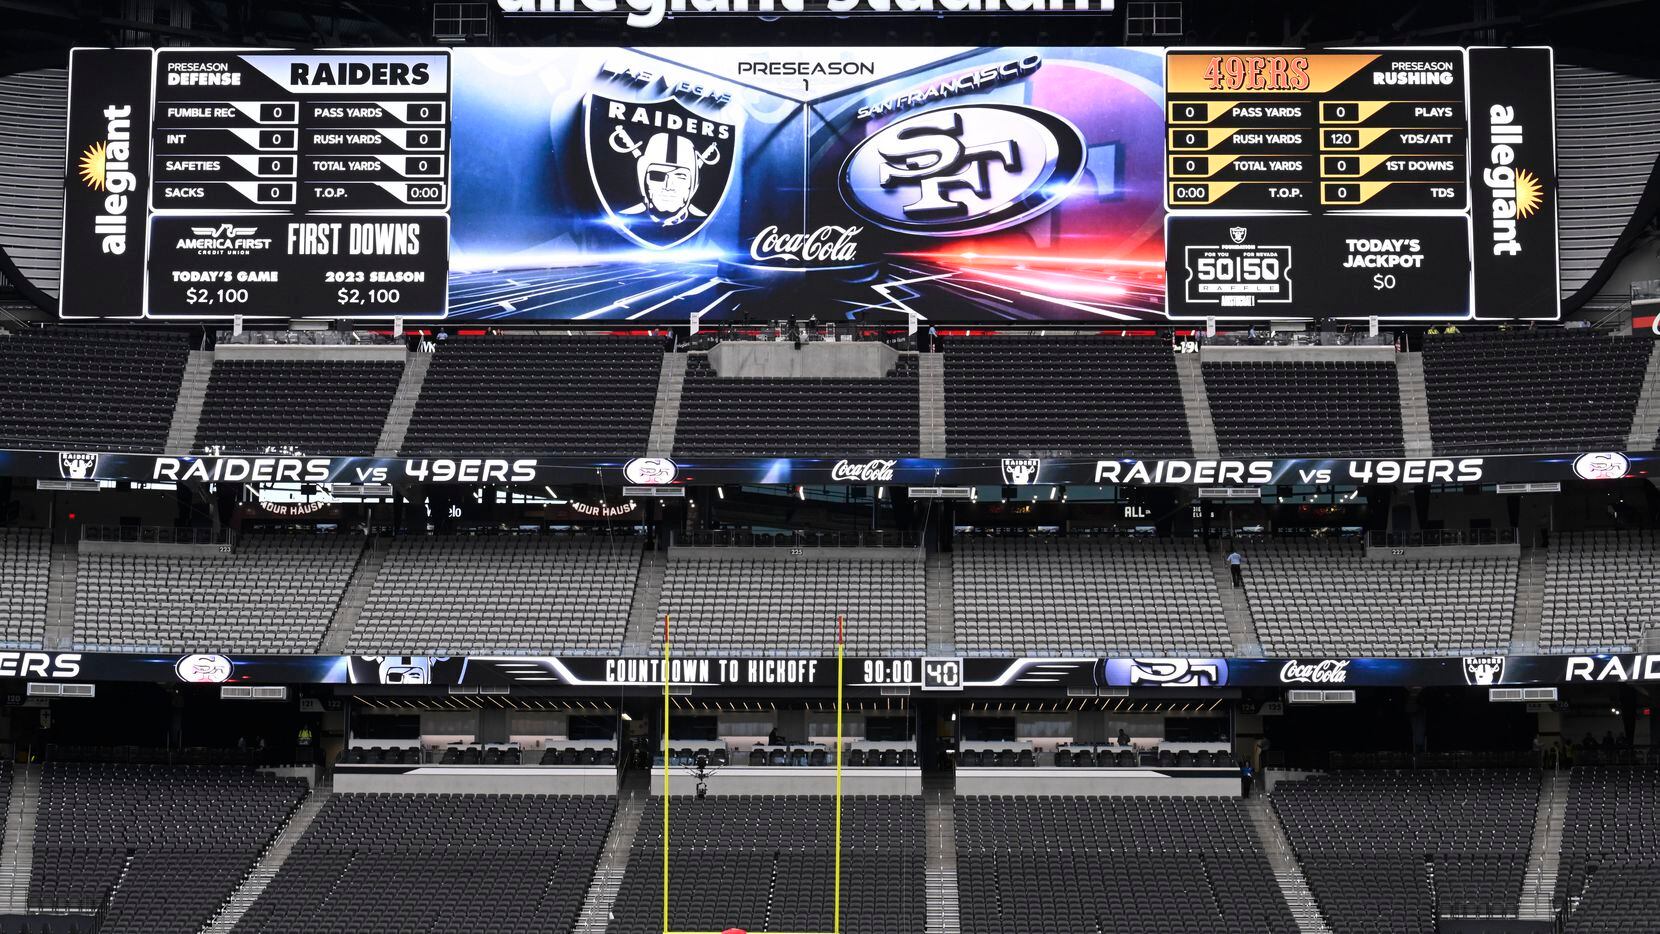 La casa de los Raiders de LAs Vegas será el escenario del Super Bowl LVIII.